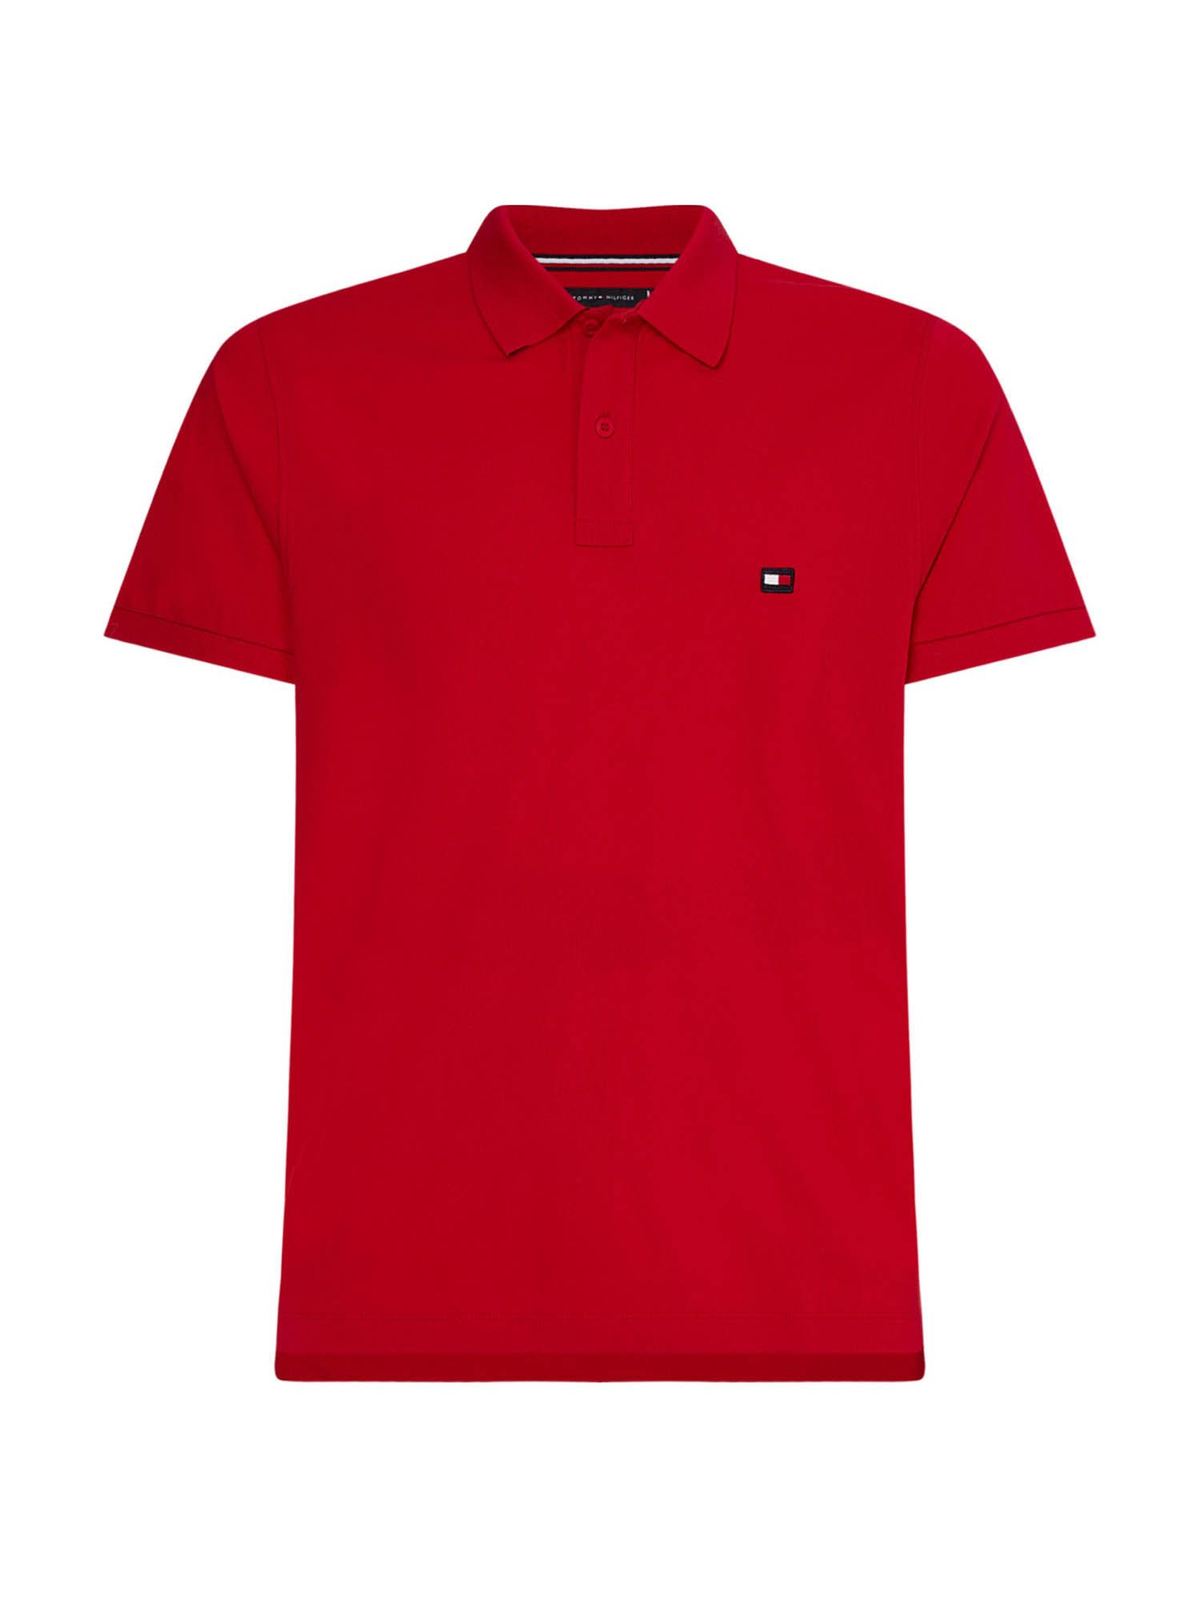 Ib vandtæt at tiltrække Polo shirts Tommy Hilfiger - Slim fit polo shirt in red -  MW0MW17793COTONEXLG